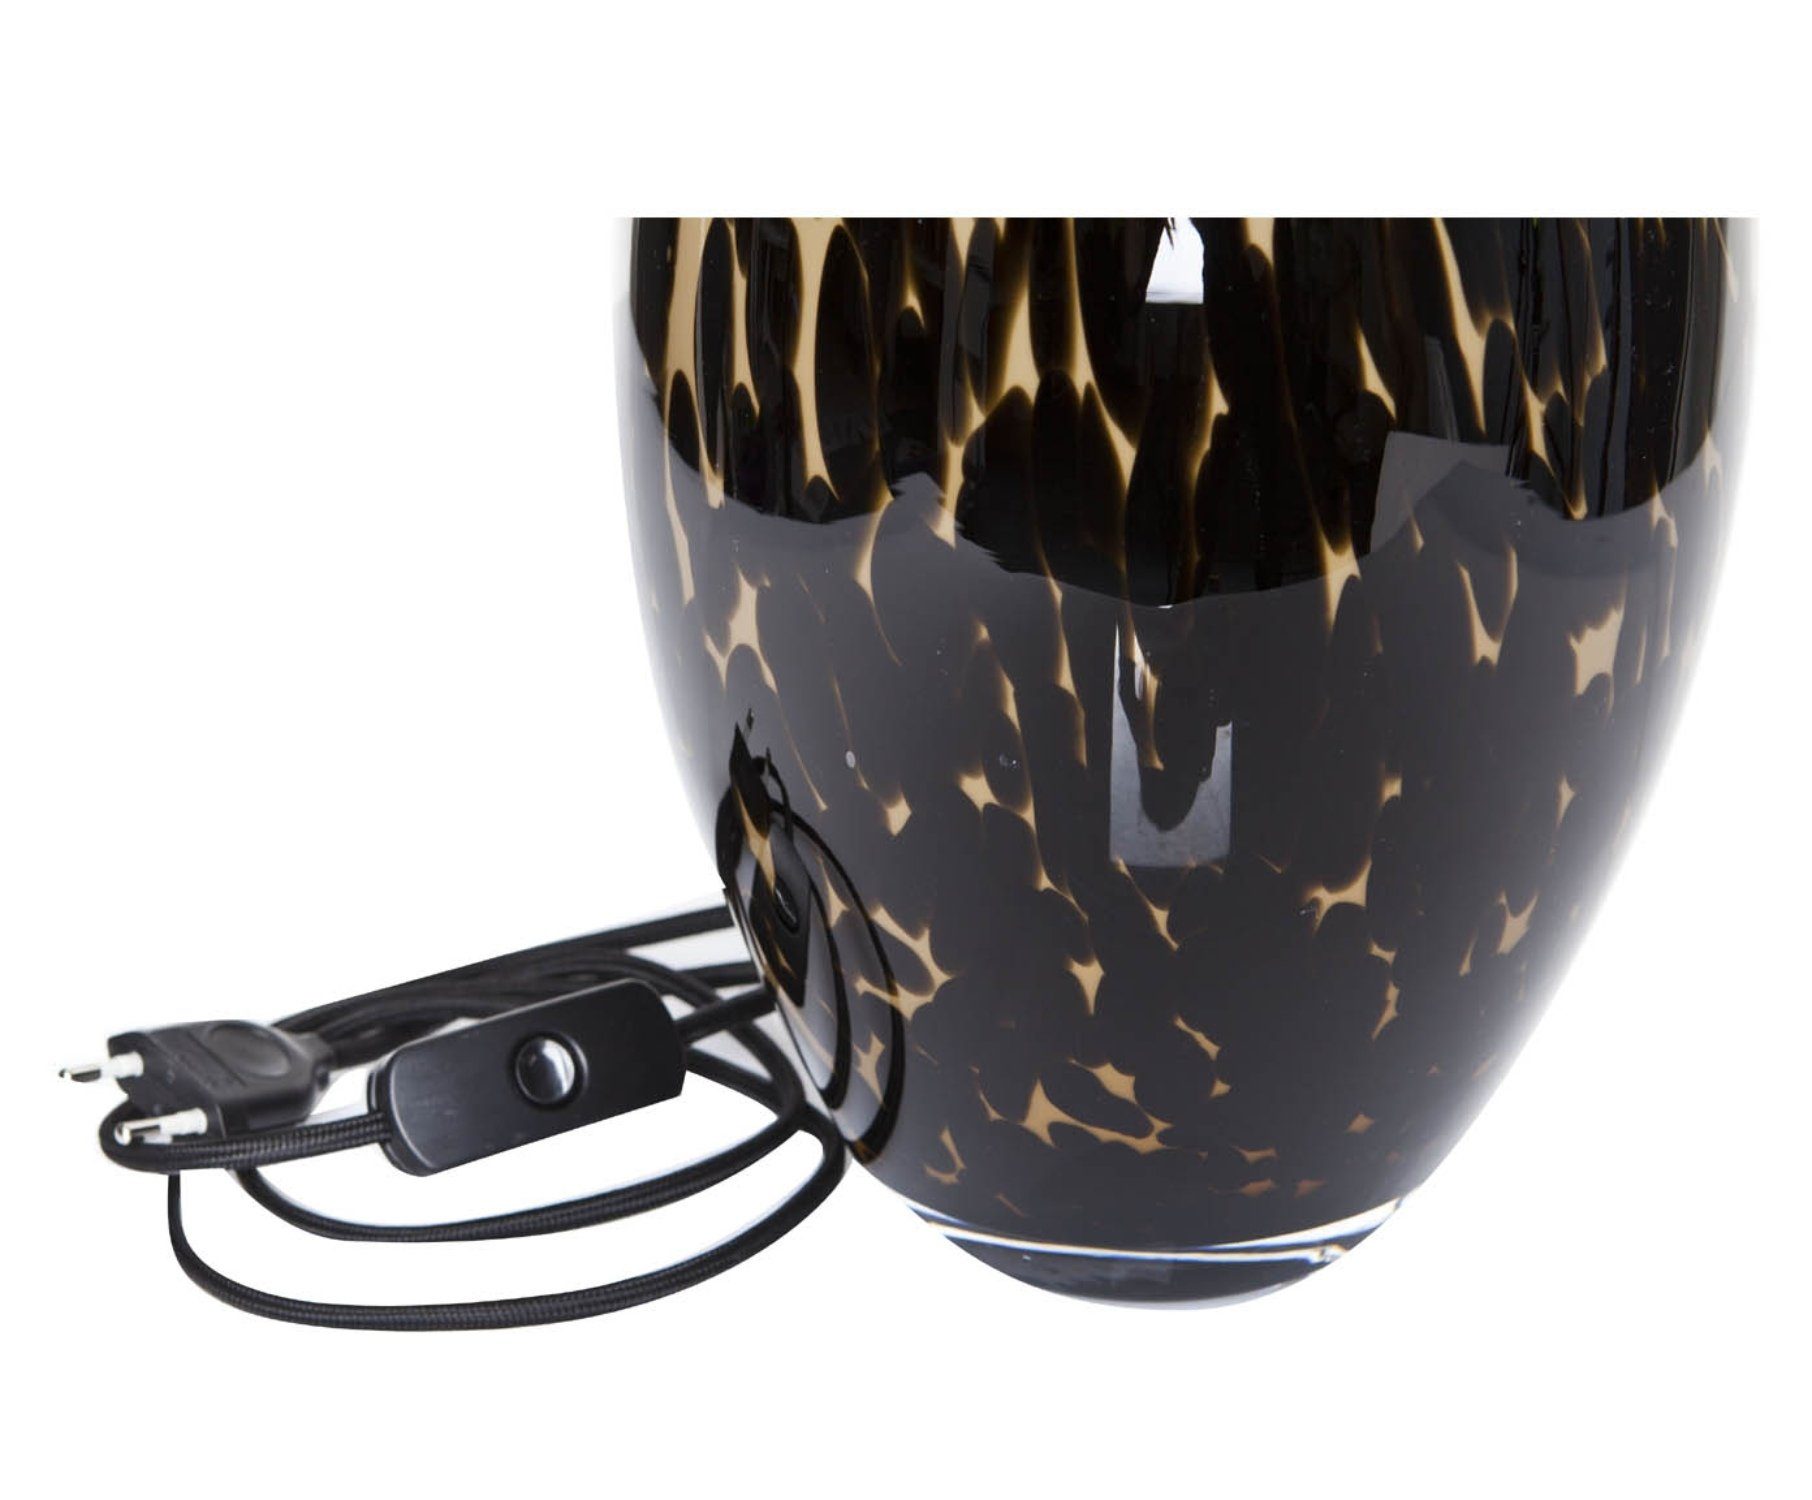 Home gefleckt braun schwarz, mundgeblasen aus Stoff Glas Leuchtmittel, warmweiß, Tischlampe Collection Signature ohne Lampenschirm Tischleuchte Glas mit Tischleuchte